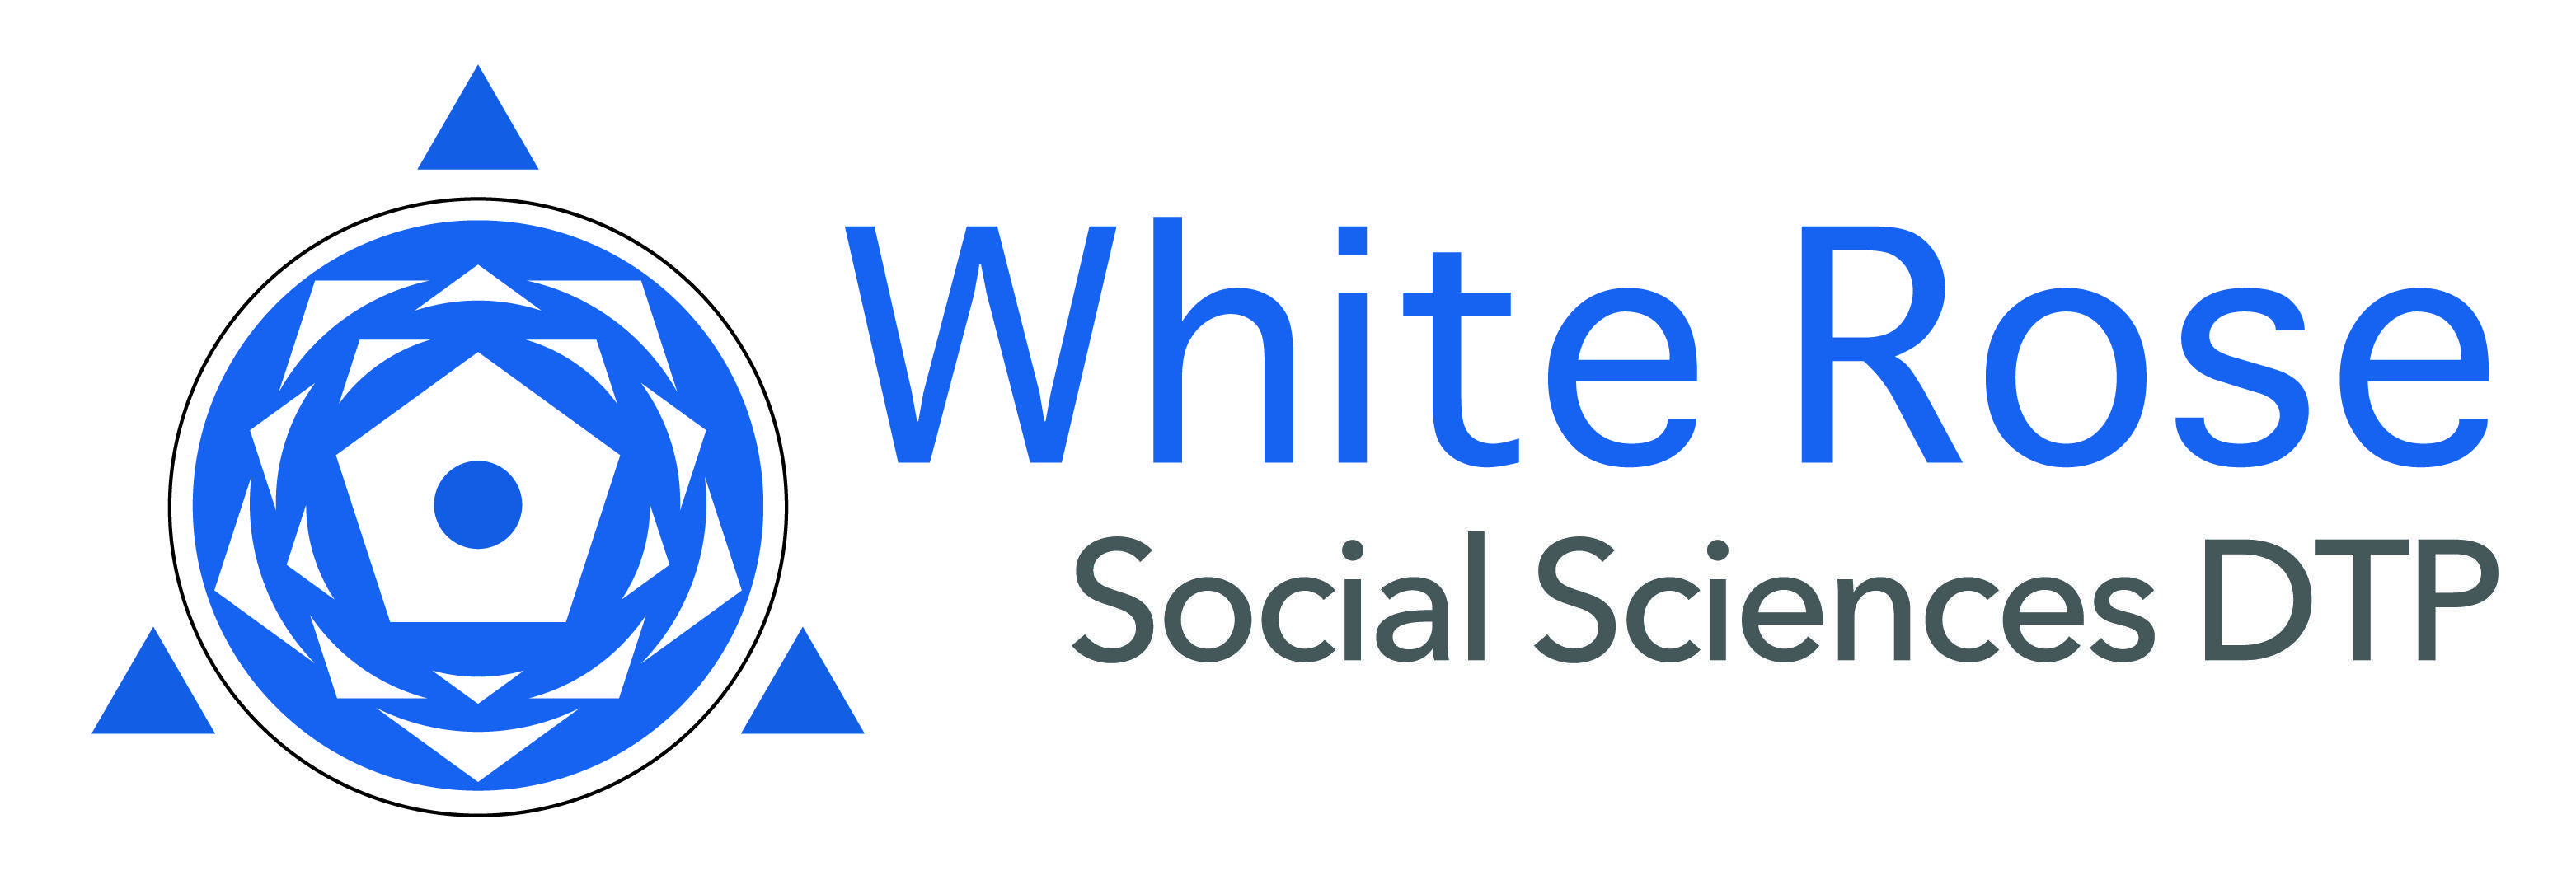 White Rose Logo - White Rose DTP Branding/Visual Identity - White Rose DTP